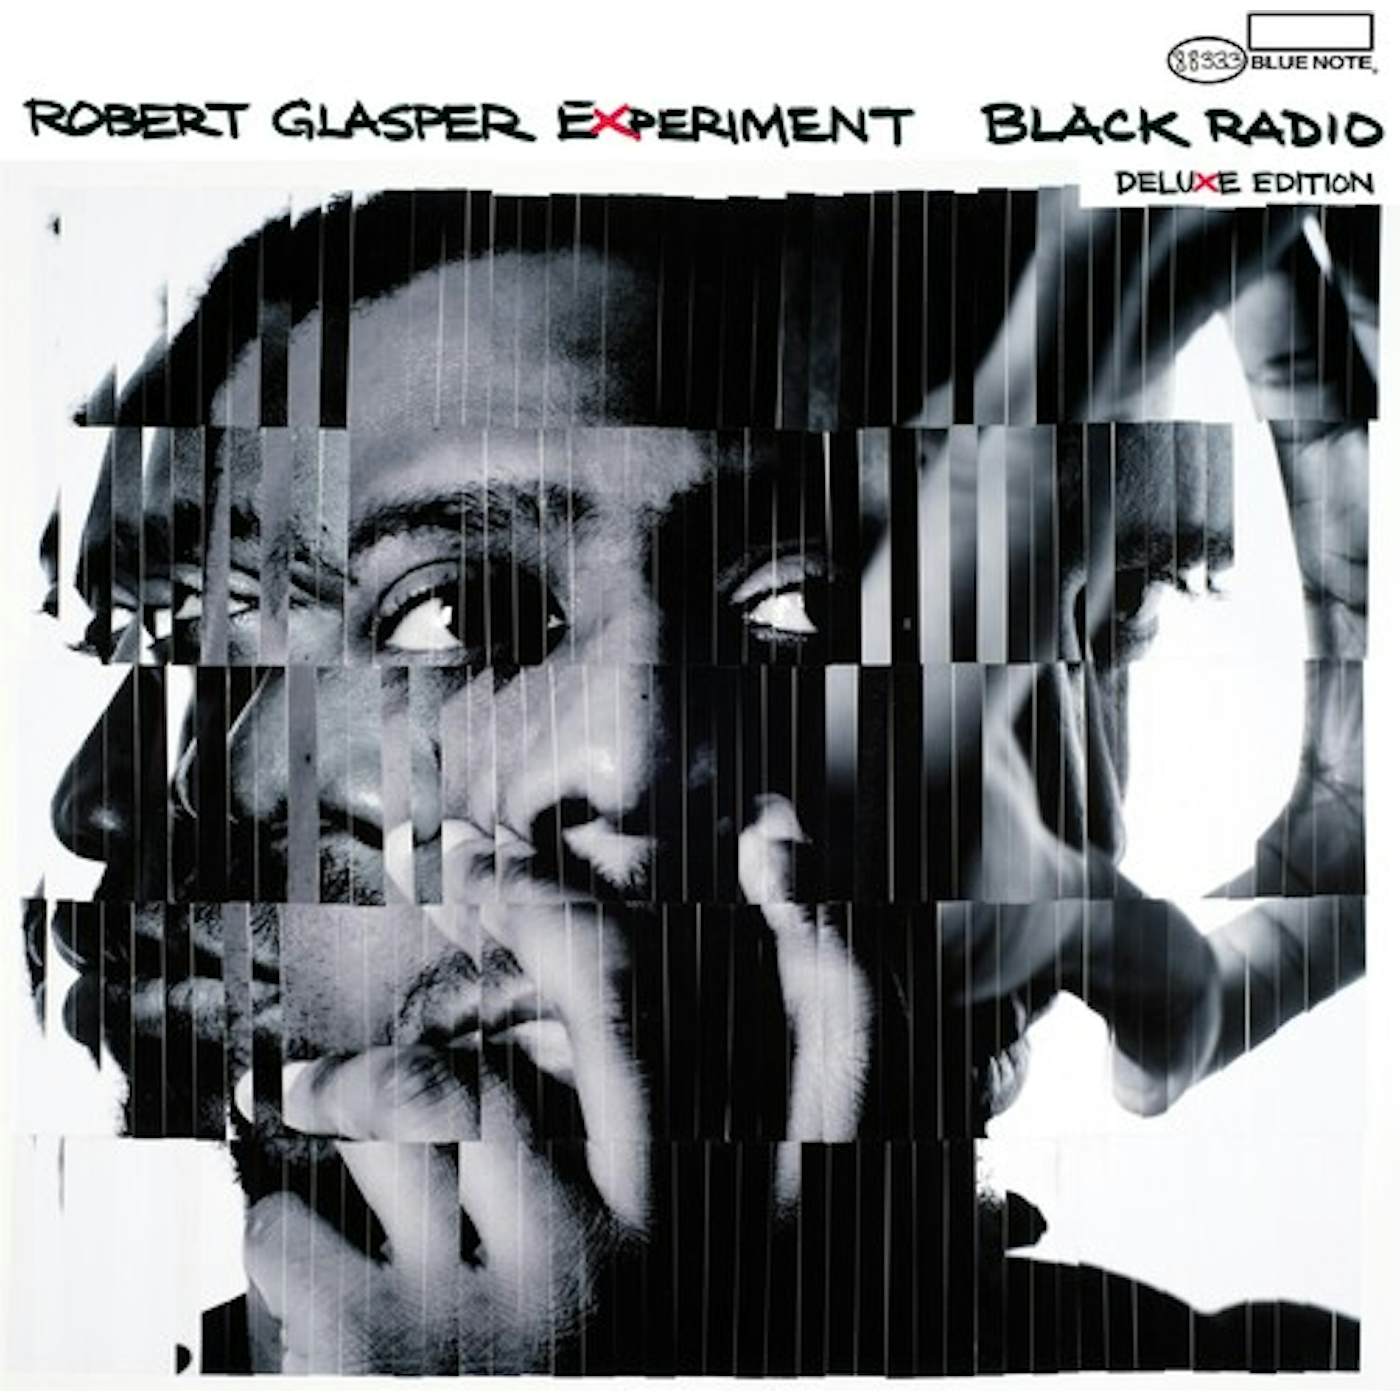 Robert Glasper BLACK RADIO (10TH ANNIVERSARY DELUXE EDITION) CD